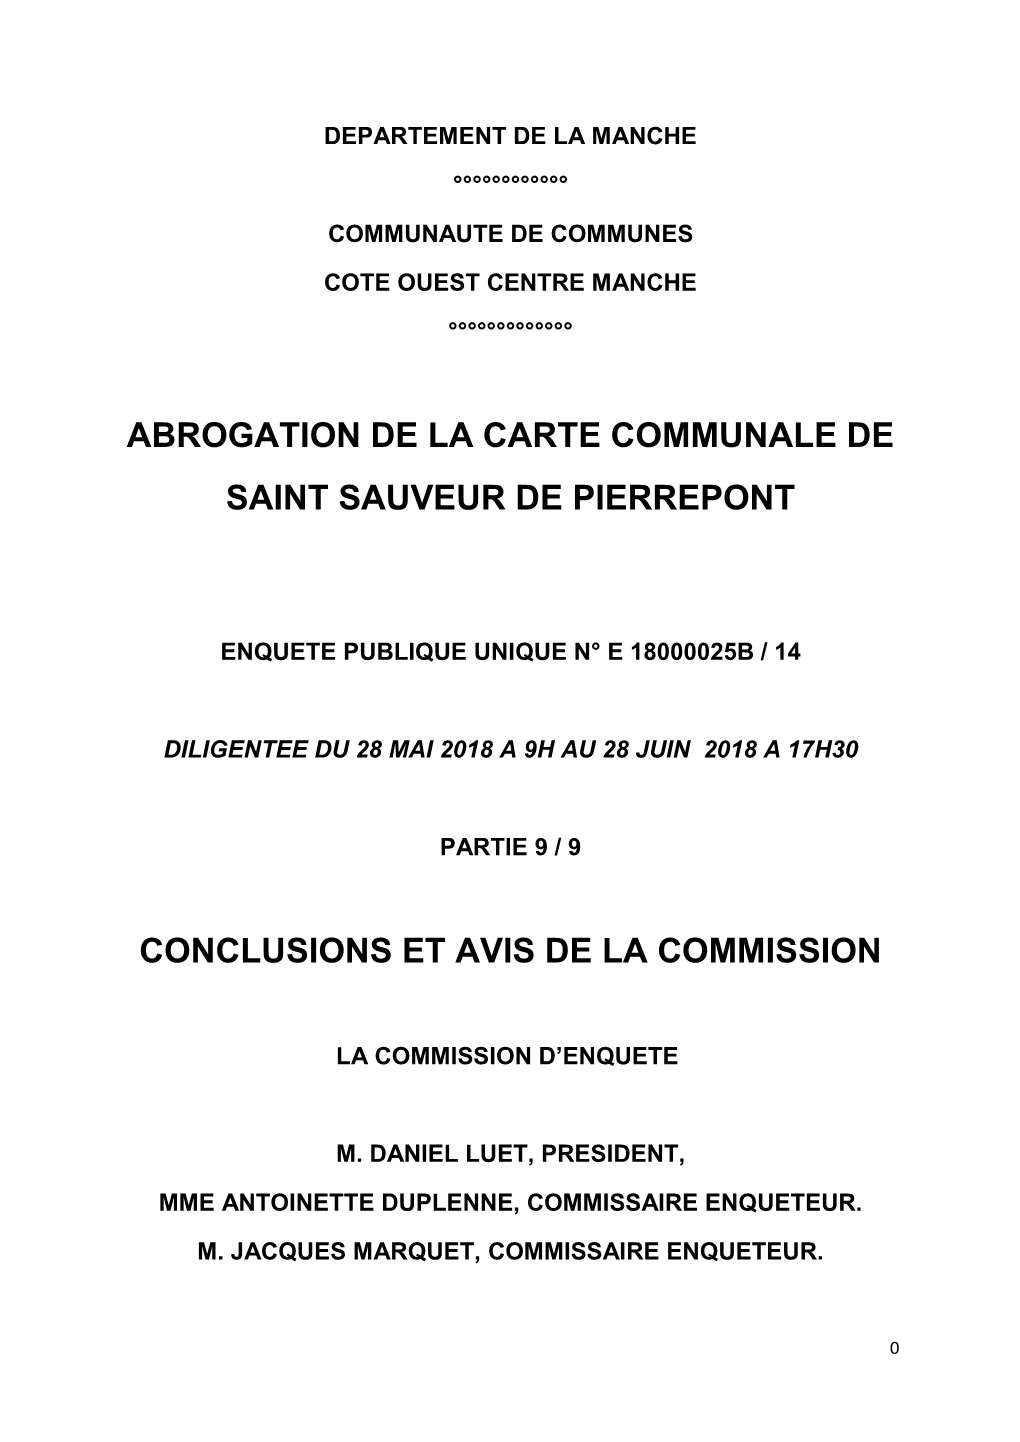 Abrogation De La Carte Communale De Saint Sauveur De Pierrepont Conclusions Et Avis De La Commission